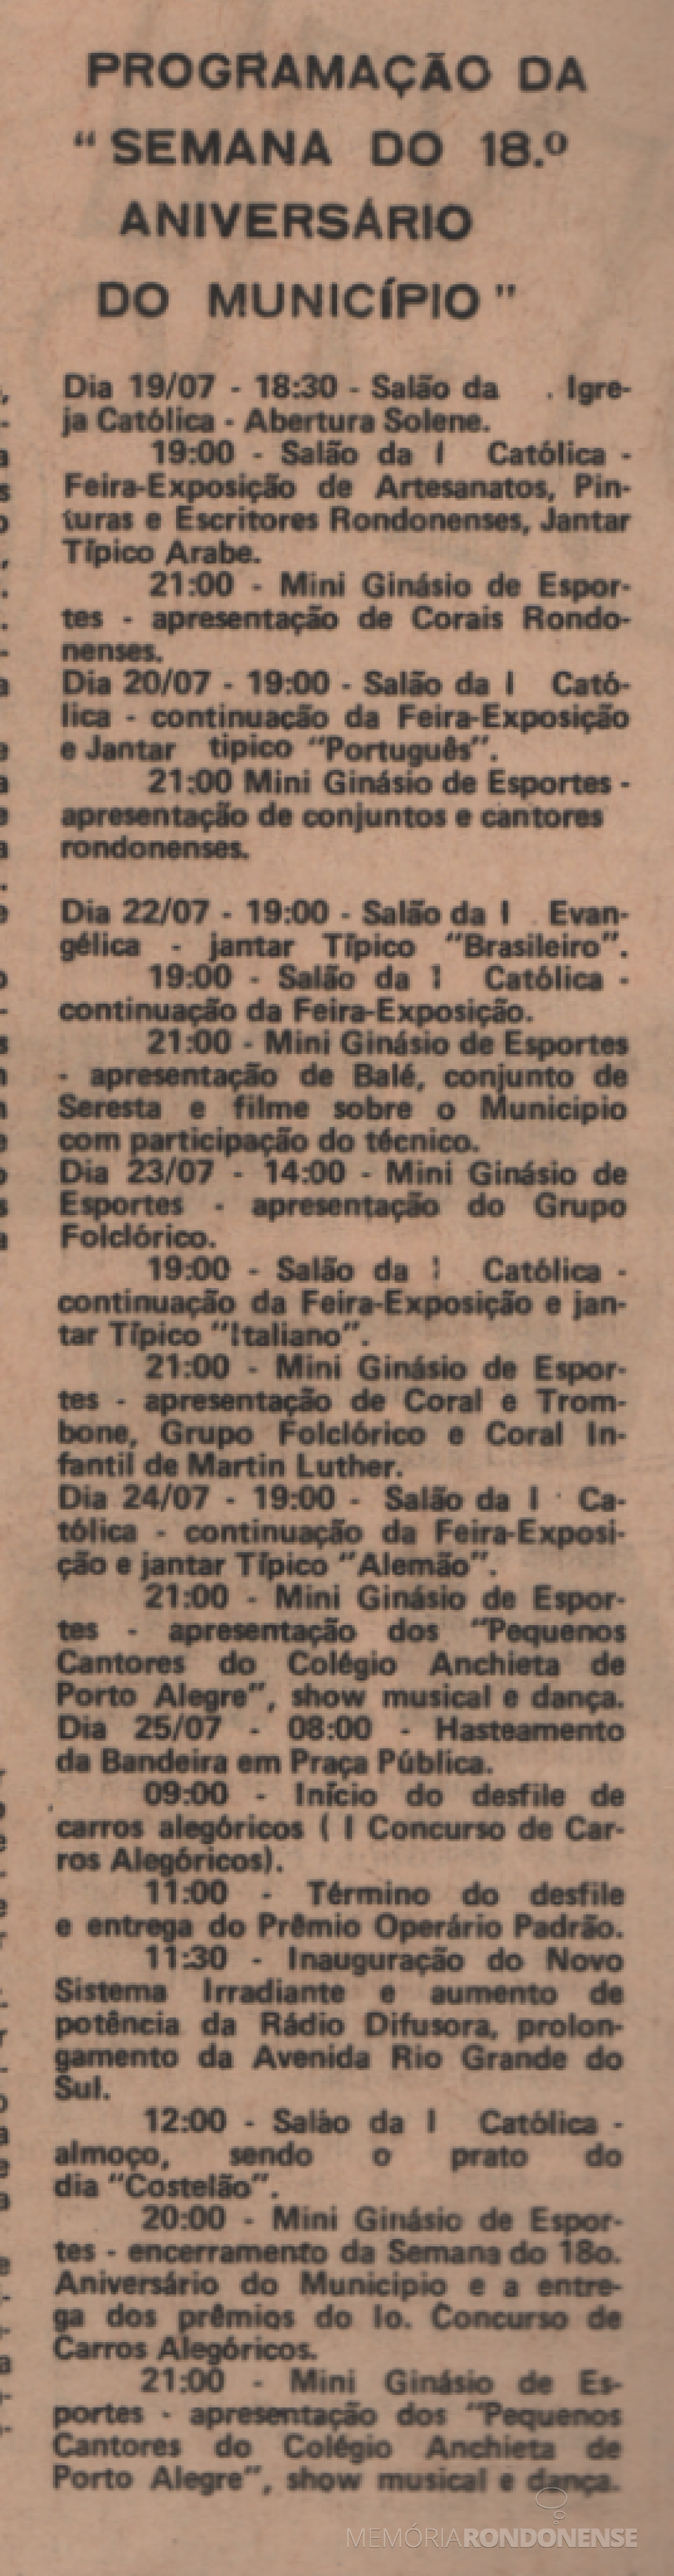 || Agenda programática de eventos do 18º aniversário de Marechal Cândido Rondon, em julho de 1978.
Imagem: Acervo Projeto Memória Rondonense/Família Ariovaldo Luiz Bier - extrato do jornal 